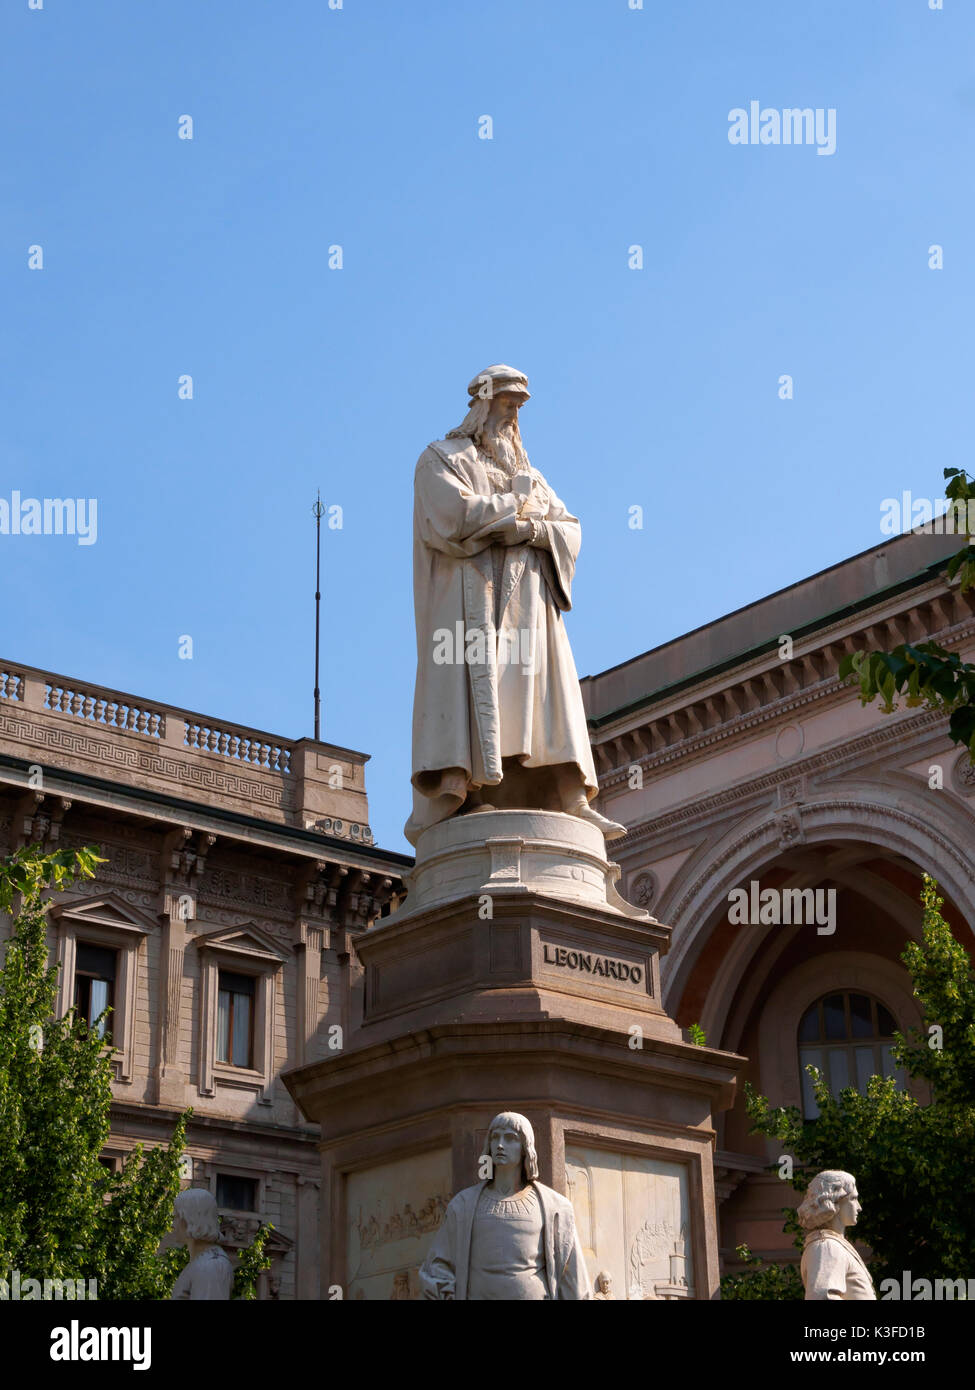 Statue of Leonardo da Vinci, Piazza della Scala, Milan, Italy Stock Photo